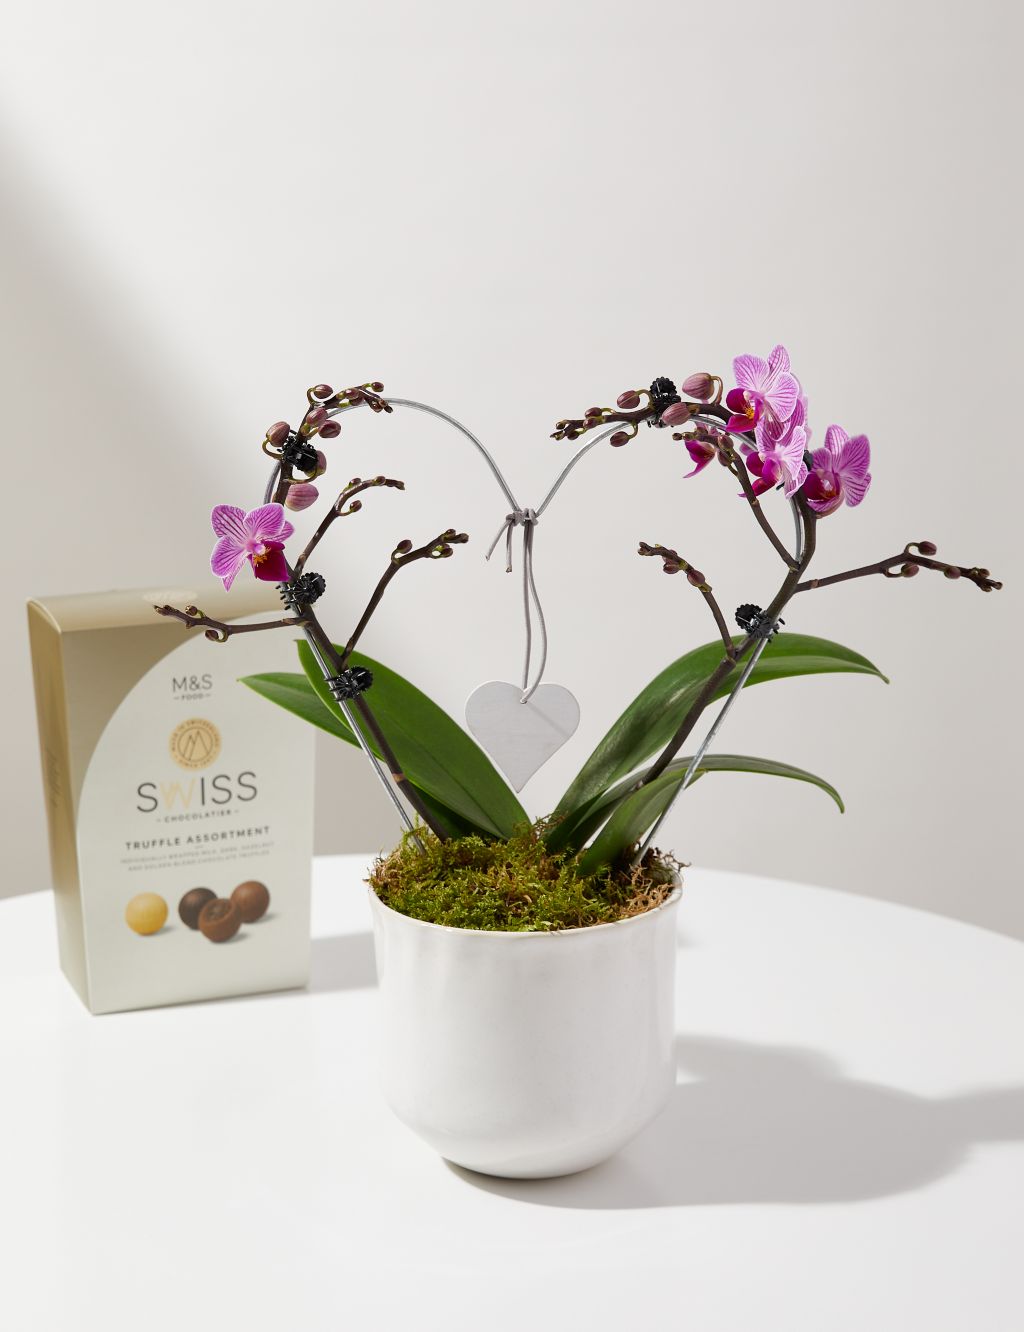 Amethyst Heart Orchid & Swiss Truffles Bundle